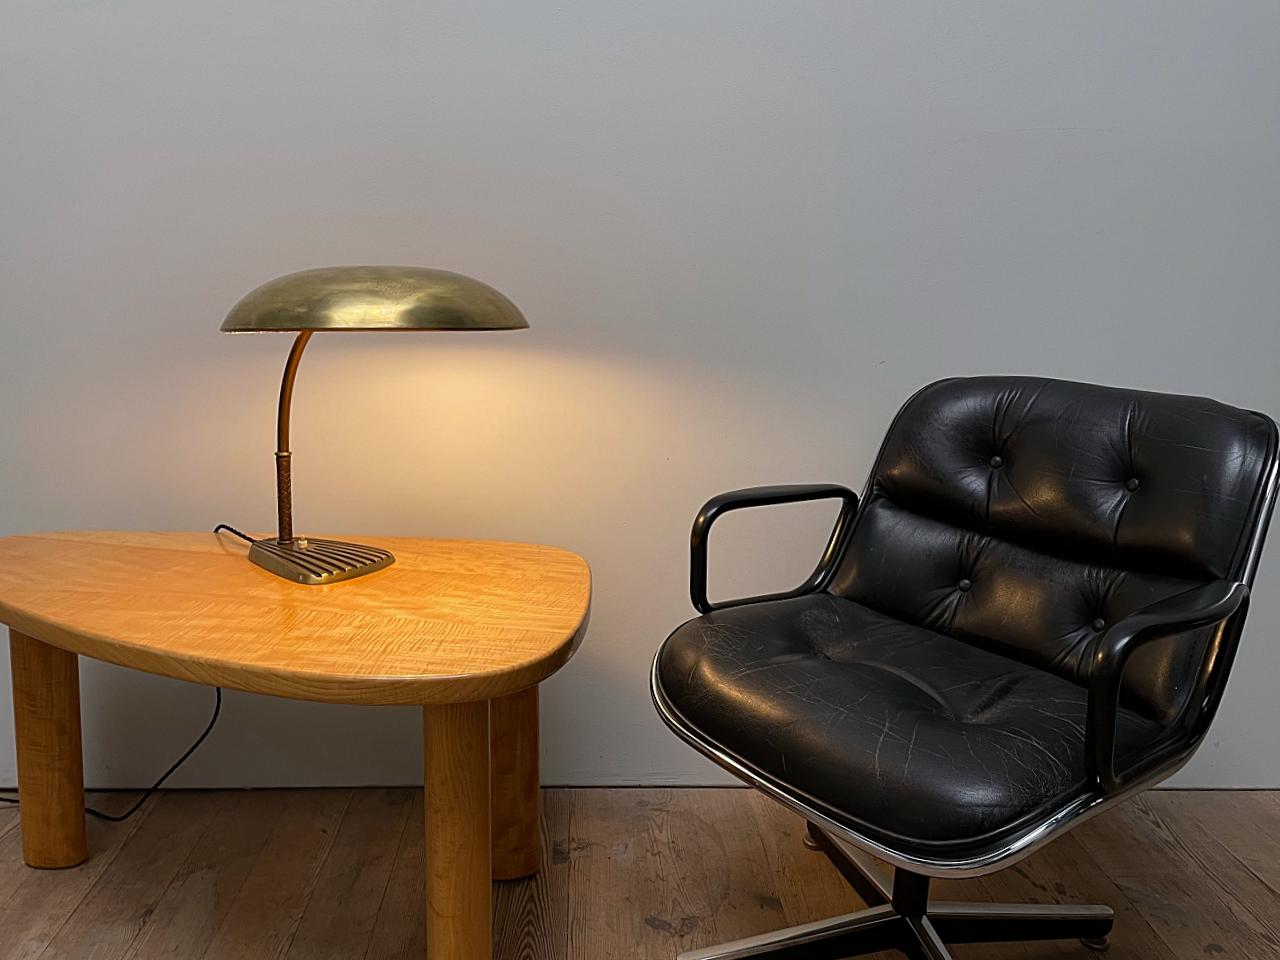 Importante lampe de bureau des années 1950, conçue par Josef Frank et fabriquée par J.T. Kalmar à l'époque de la modernité viennoise. Le luminaire est en laiton massif de forme très élégante et de haute qualité de fabrication. 
Magnifique état